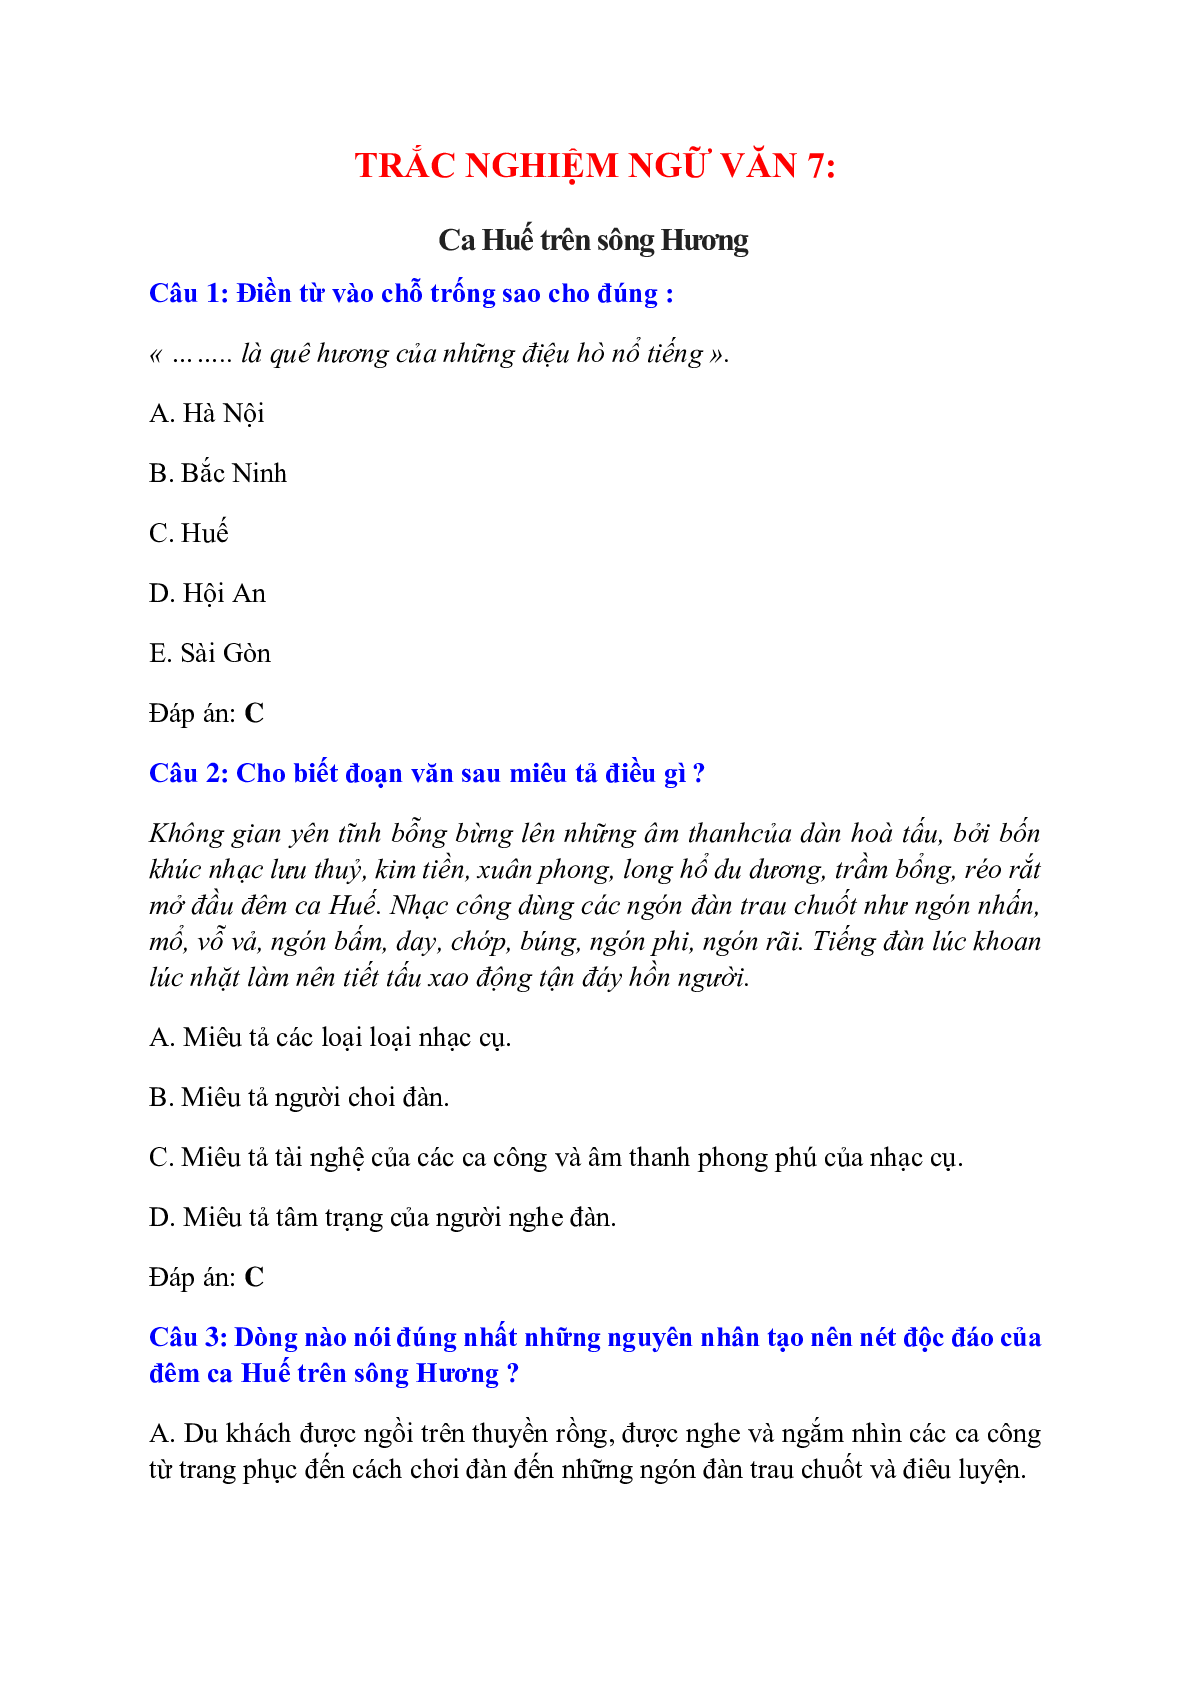 Trắc nghiệm Ca Huế trên sông Hương có đáp án – Ngữ văn lớp 7 (trang 1)